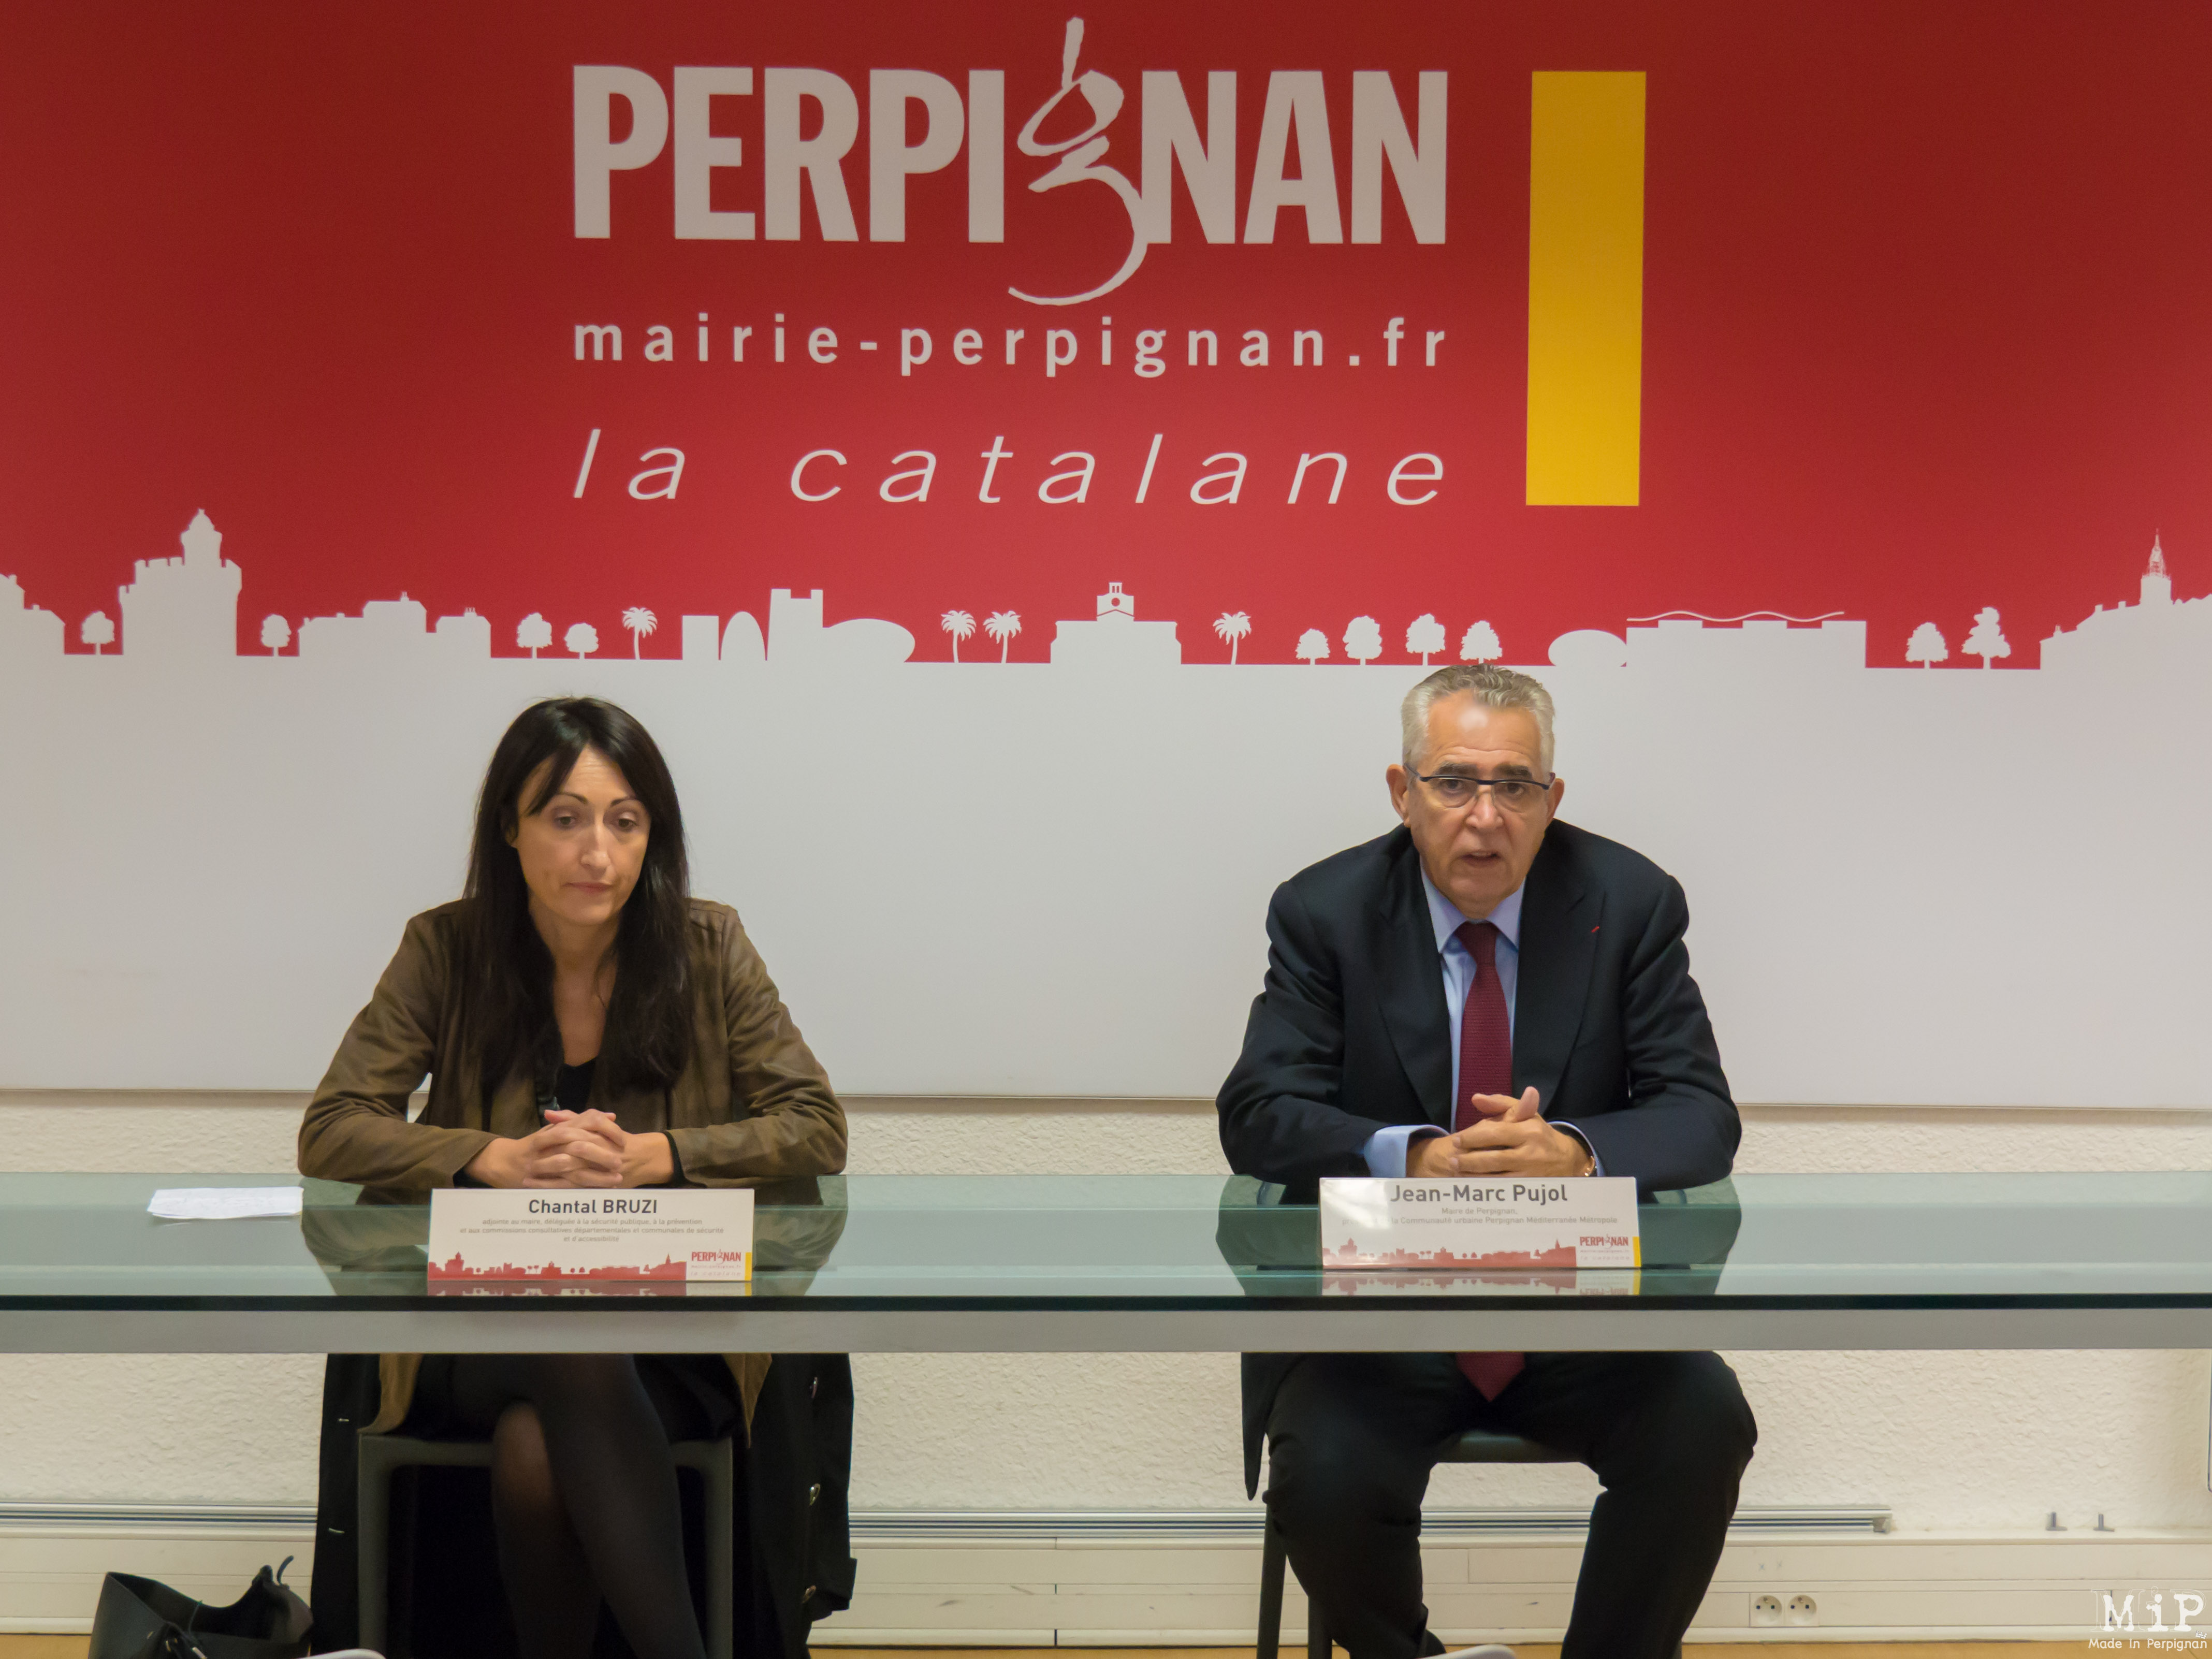 Résultat de recherche d'images pour "perpignan la catalane jean marc pujol"